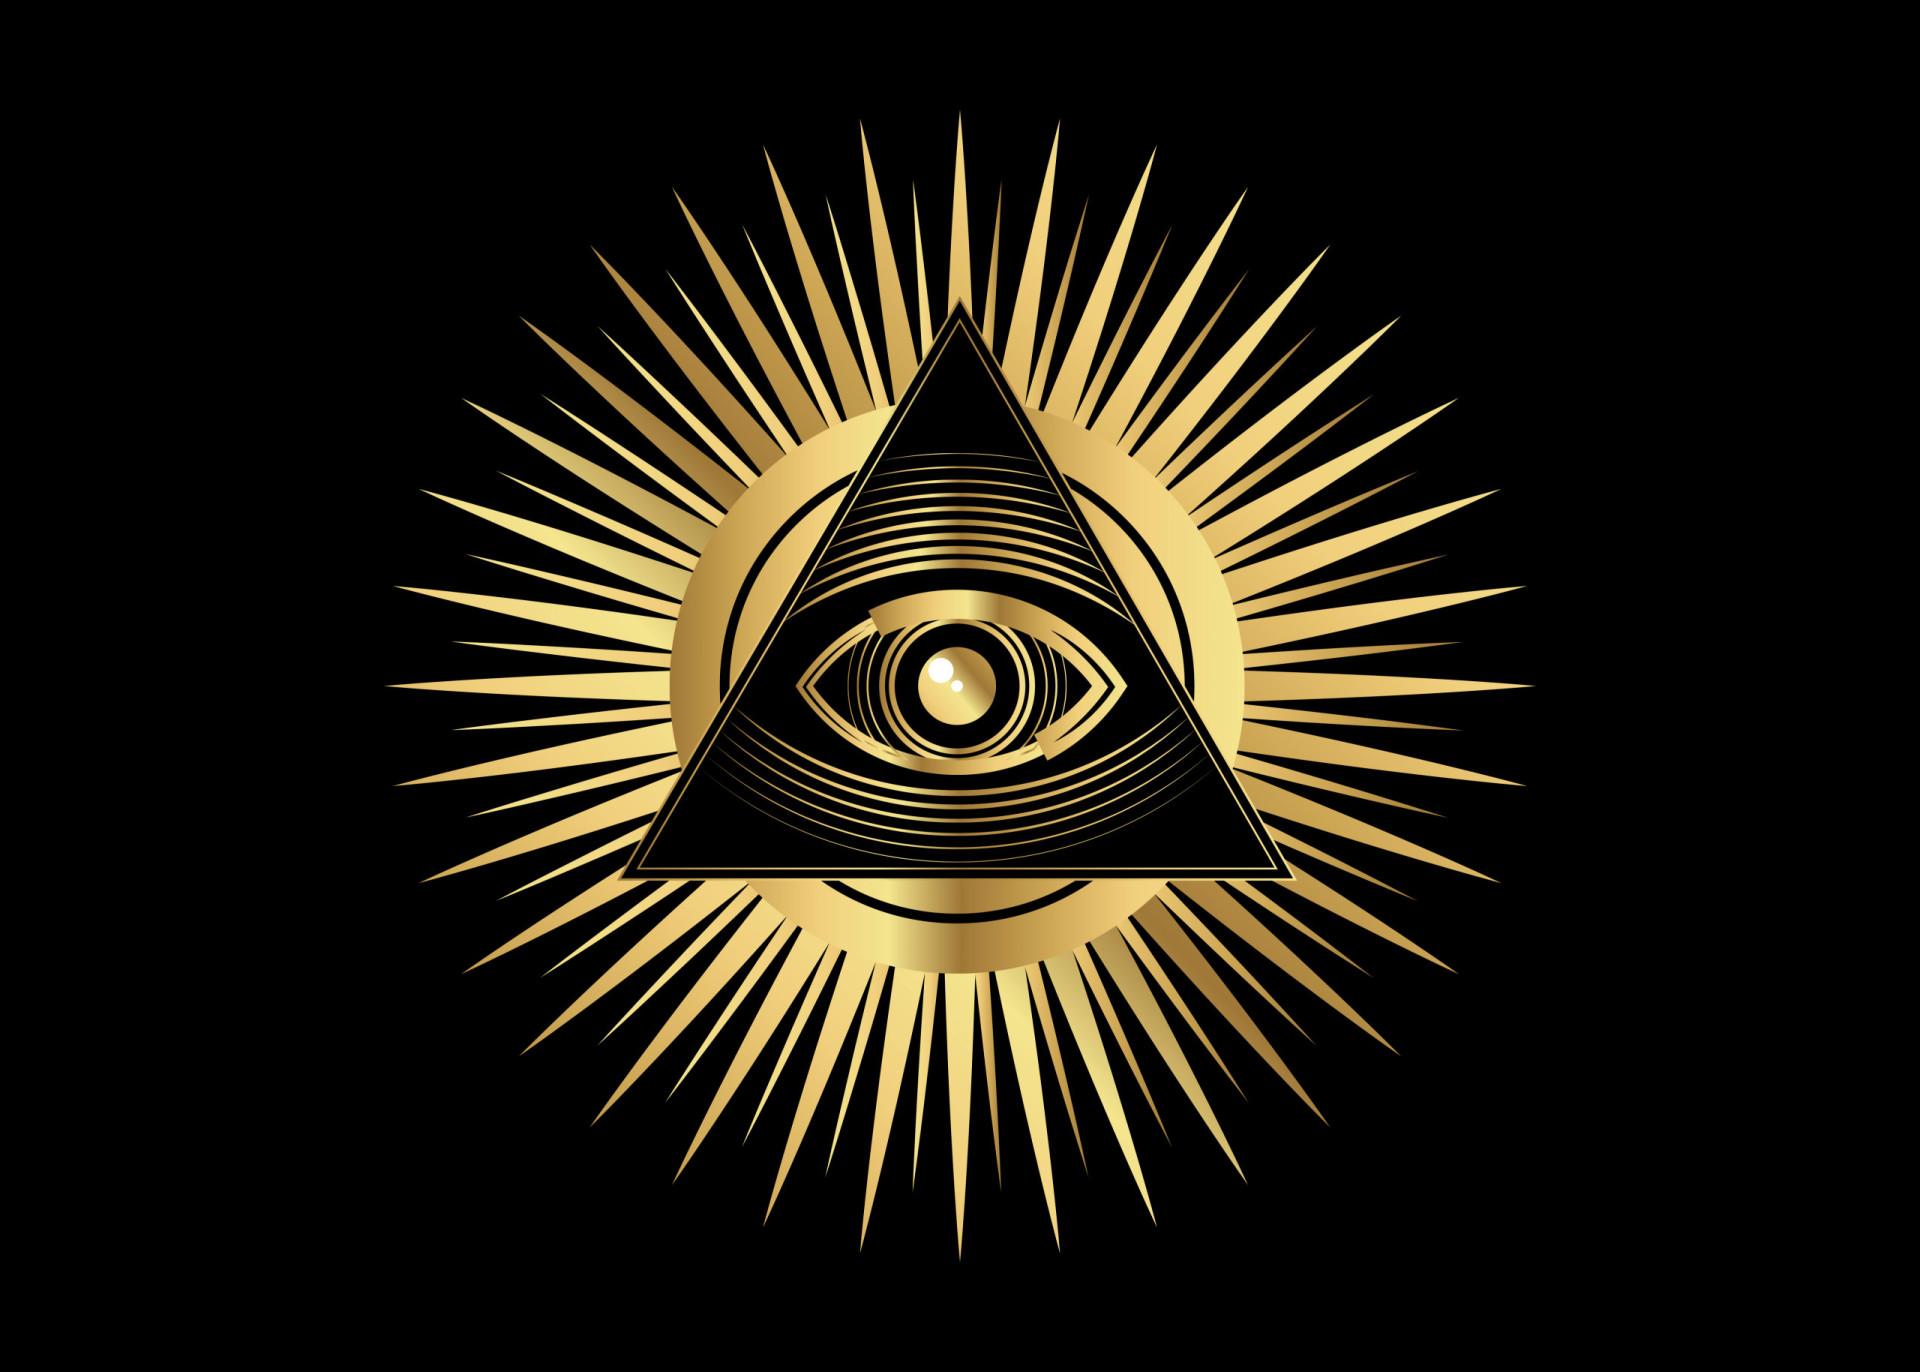 масонский знак на казанском соборе